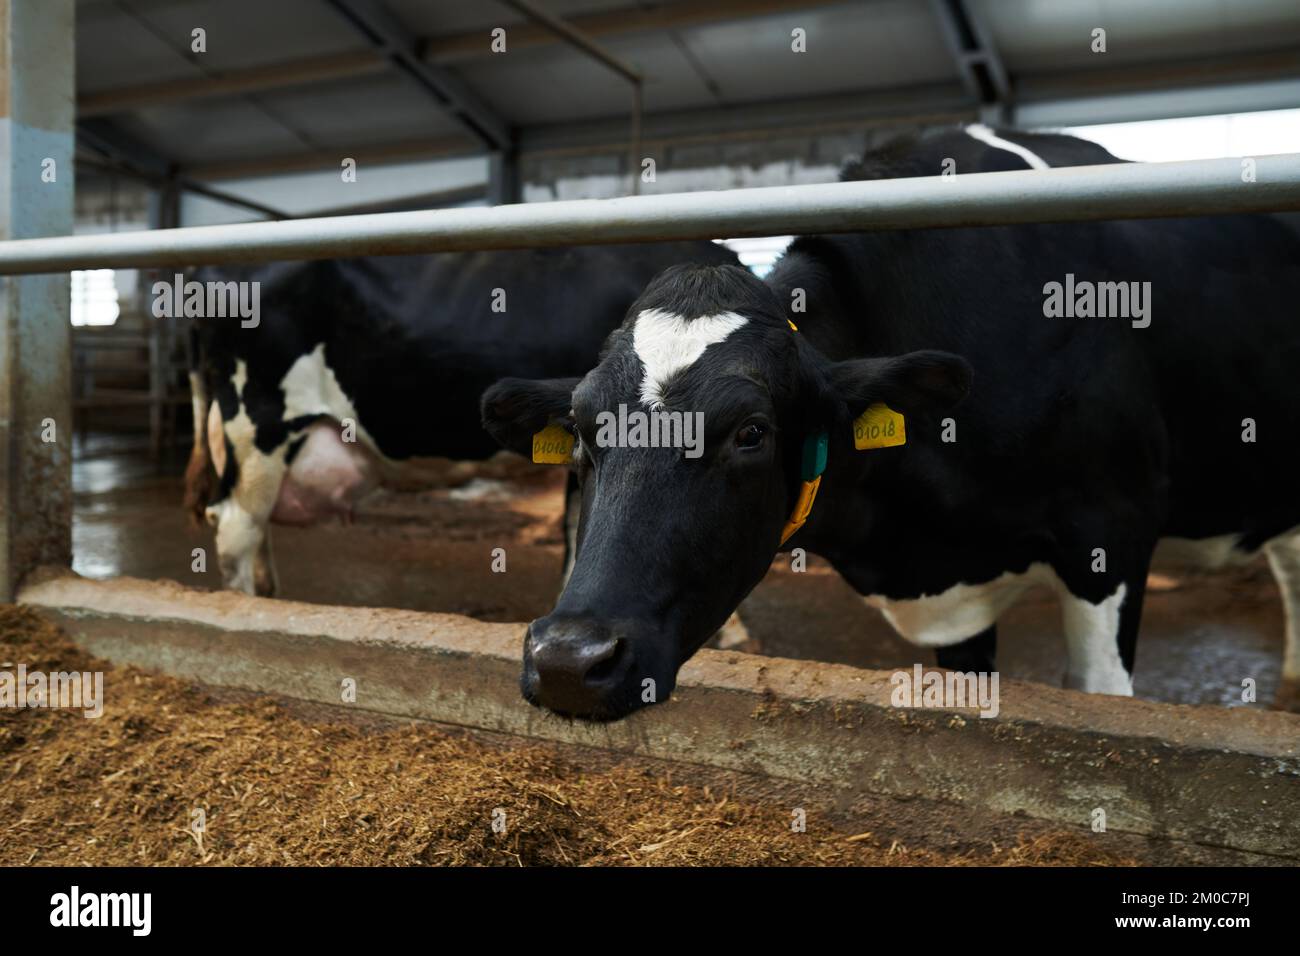 Vaca lechera negra con manchas blancas en la frente y el pecho de pie en el cowshed delante de la cámara y comiendo comida del comedero Foto de stock